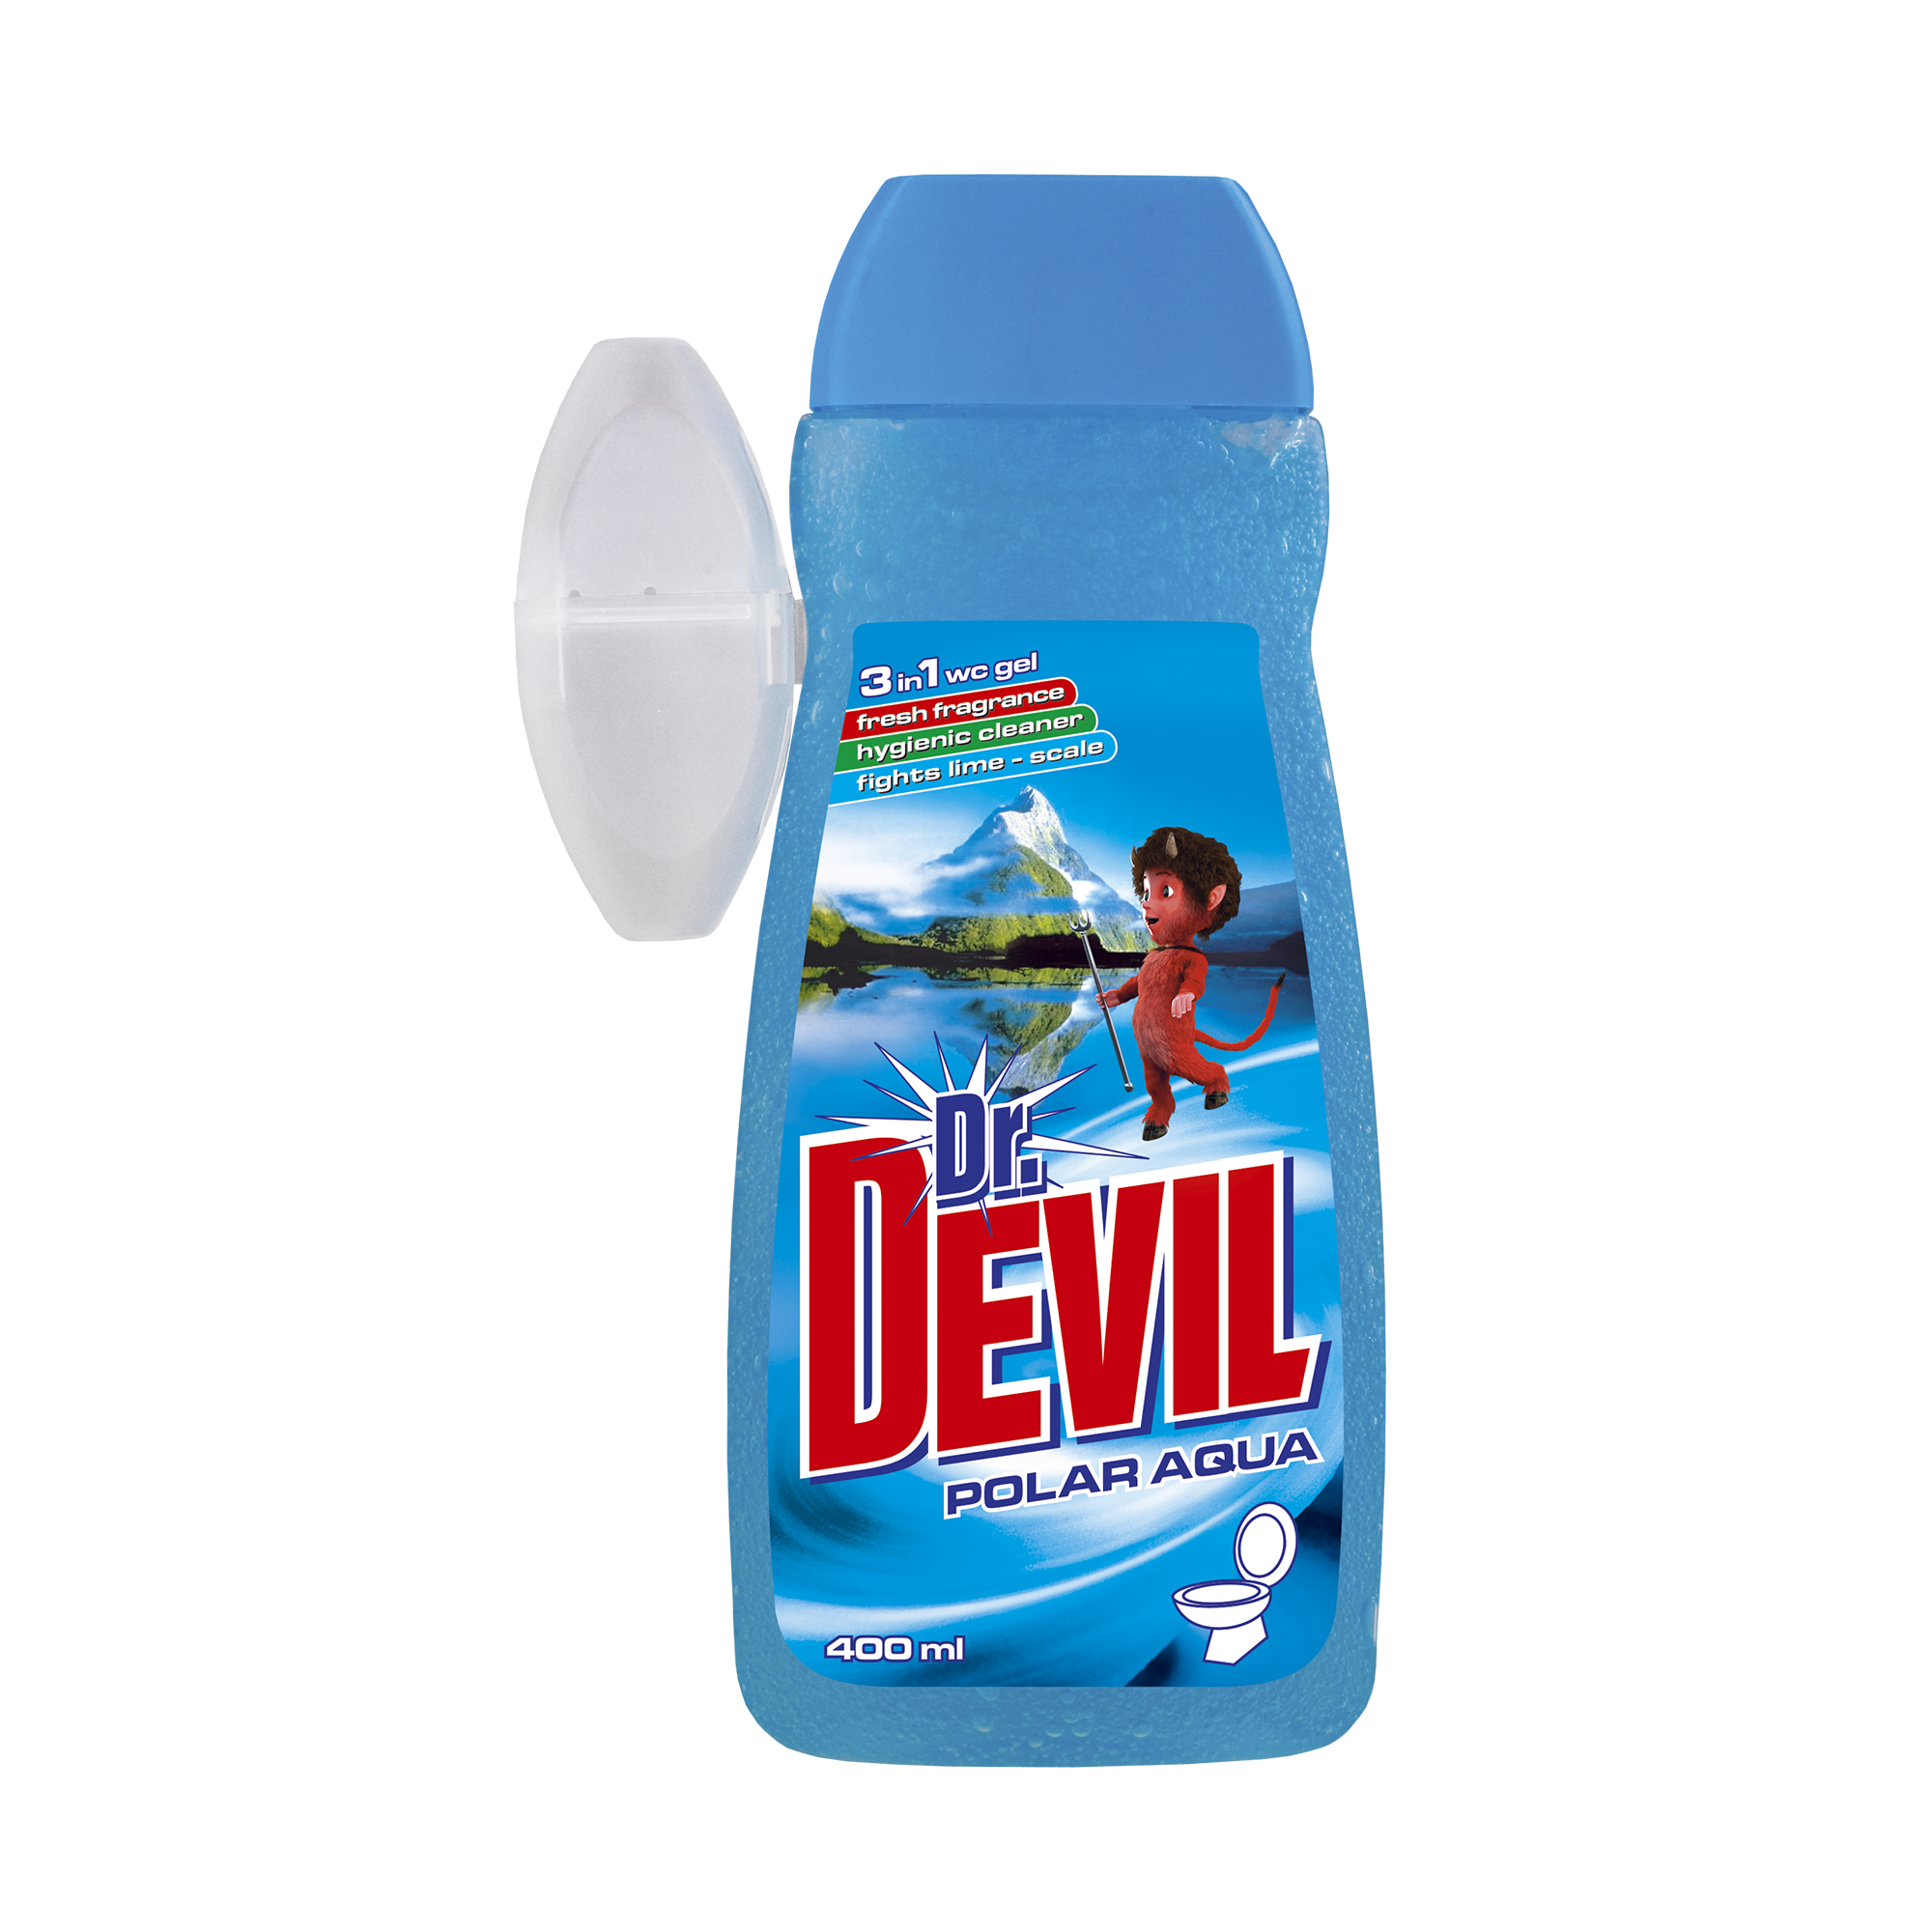 Dr. Devil Polar Aqua 3in1 WC gel